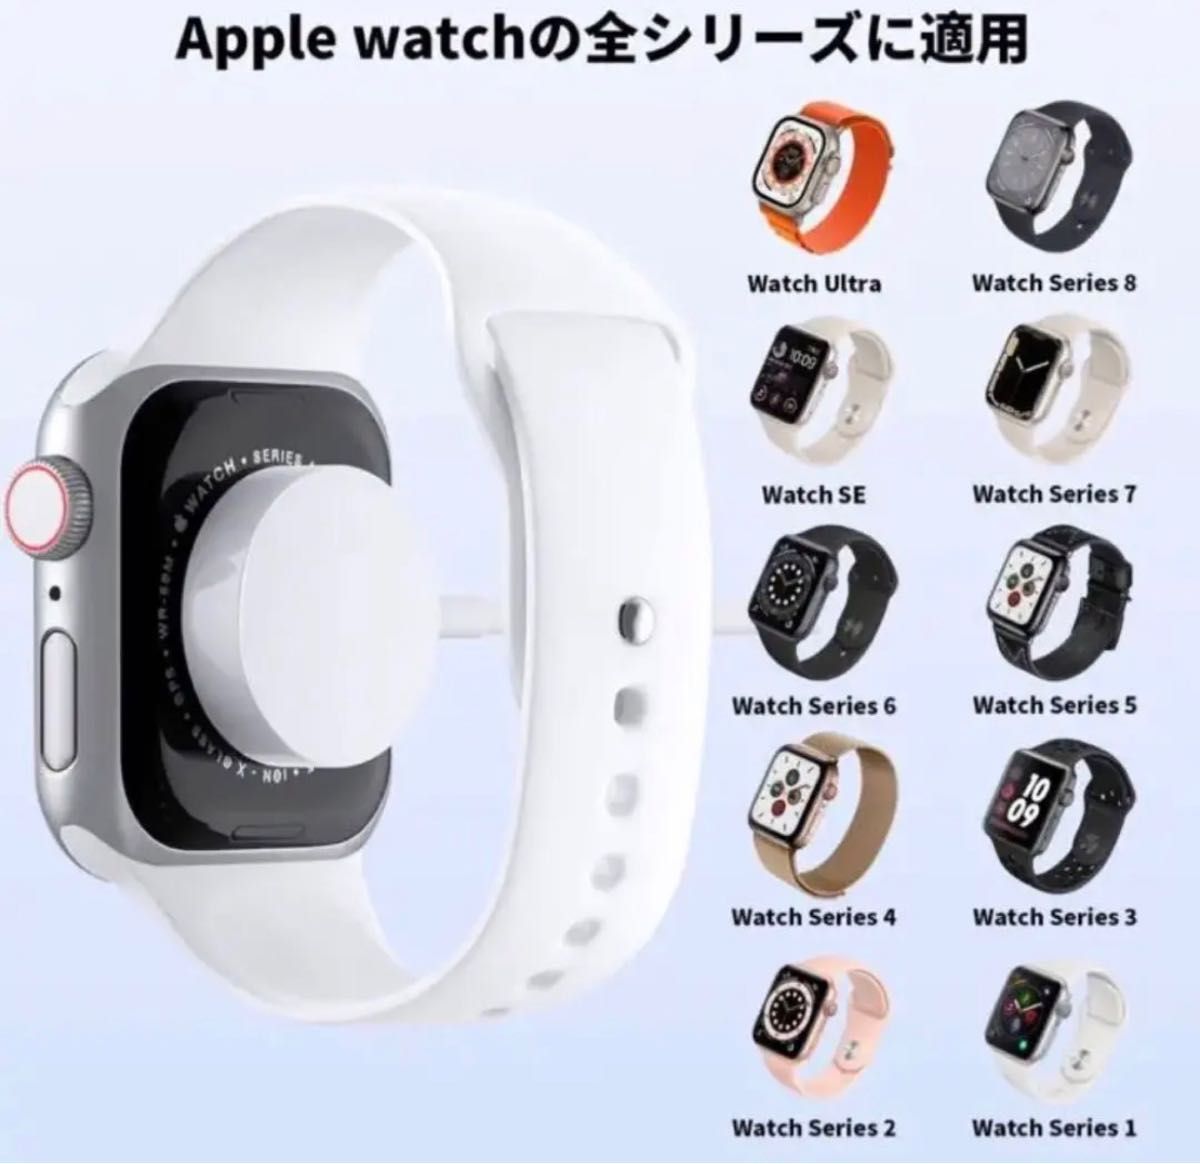 【新品】Apple Watch充電器 全シリーズ対応 Apple Watch 充電ケーブル アップルウォッチ USB充電ケーブル